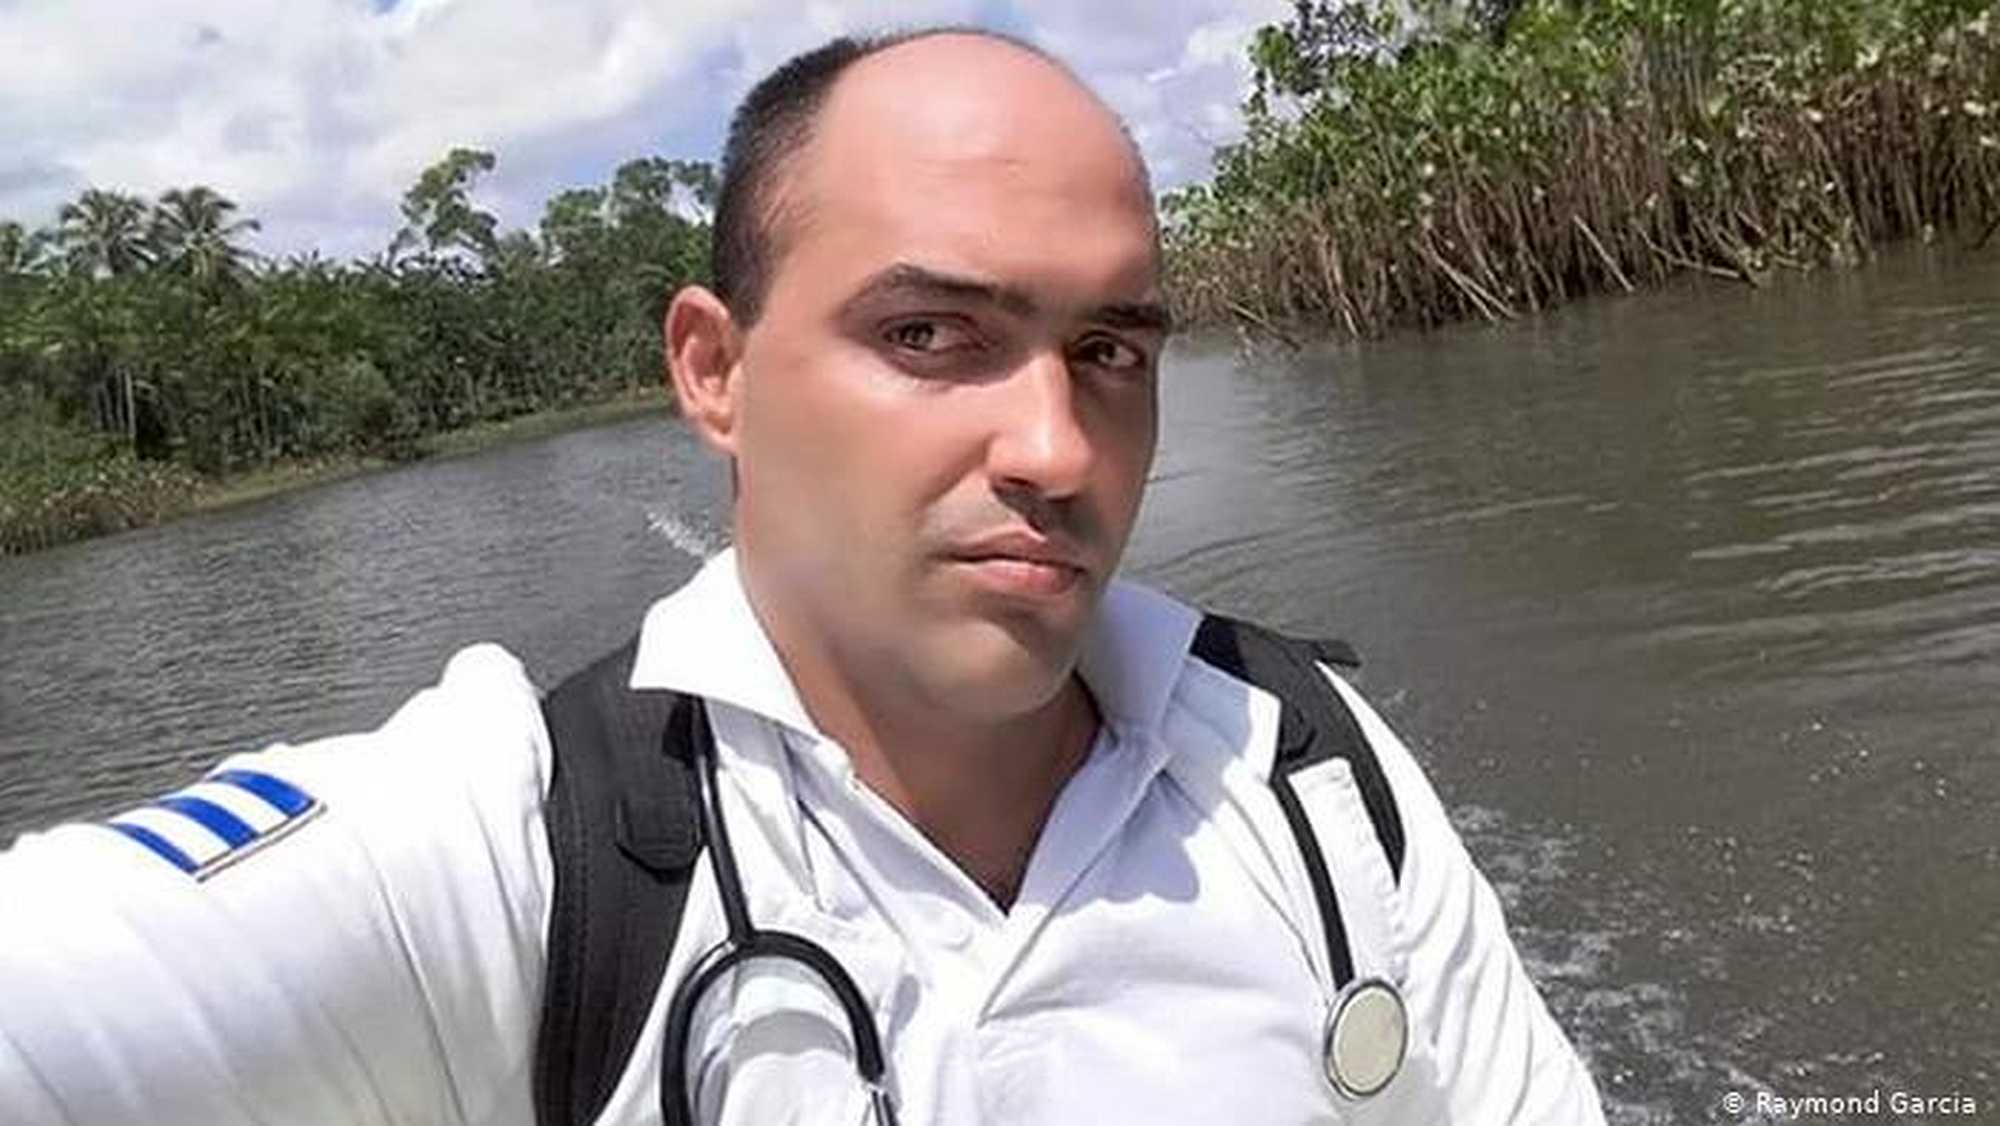 Cuban doctor Raymond Garcia in Brazil